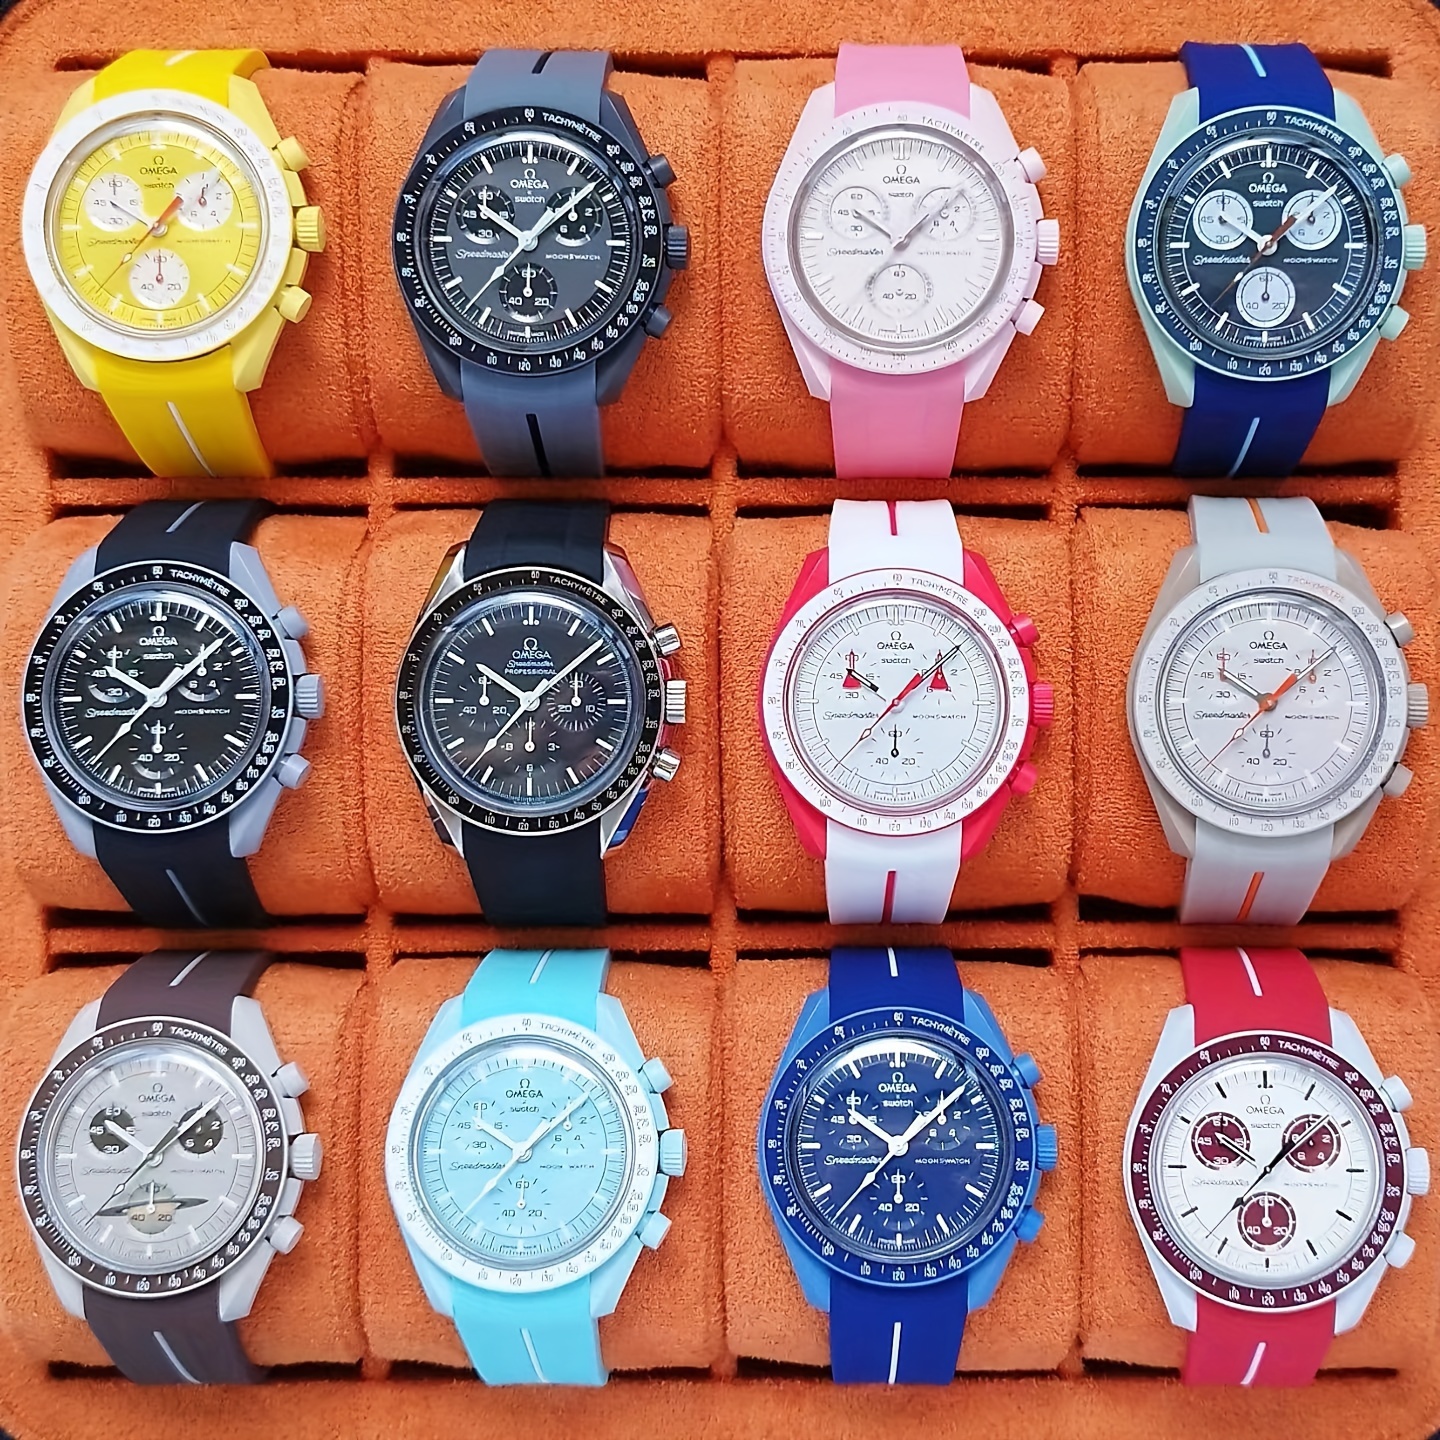  Relojes De Pulsera Para Mujer - $100 A $200 / Relojes De  Pulsera Para Mujer / Re: Ropa, Zapatos Y Joyería